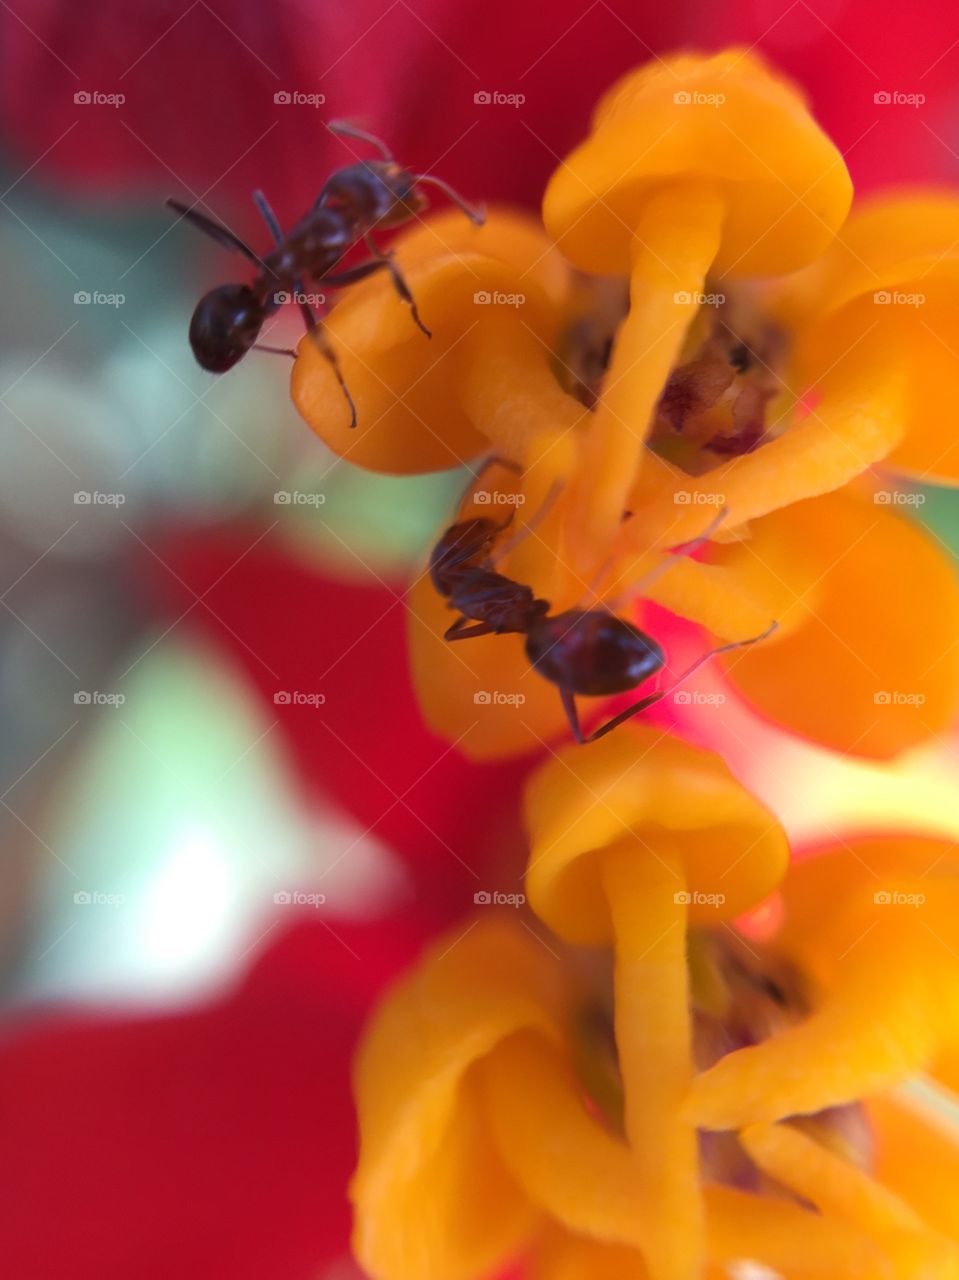 Ants on flower